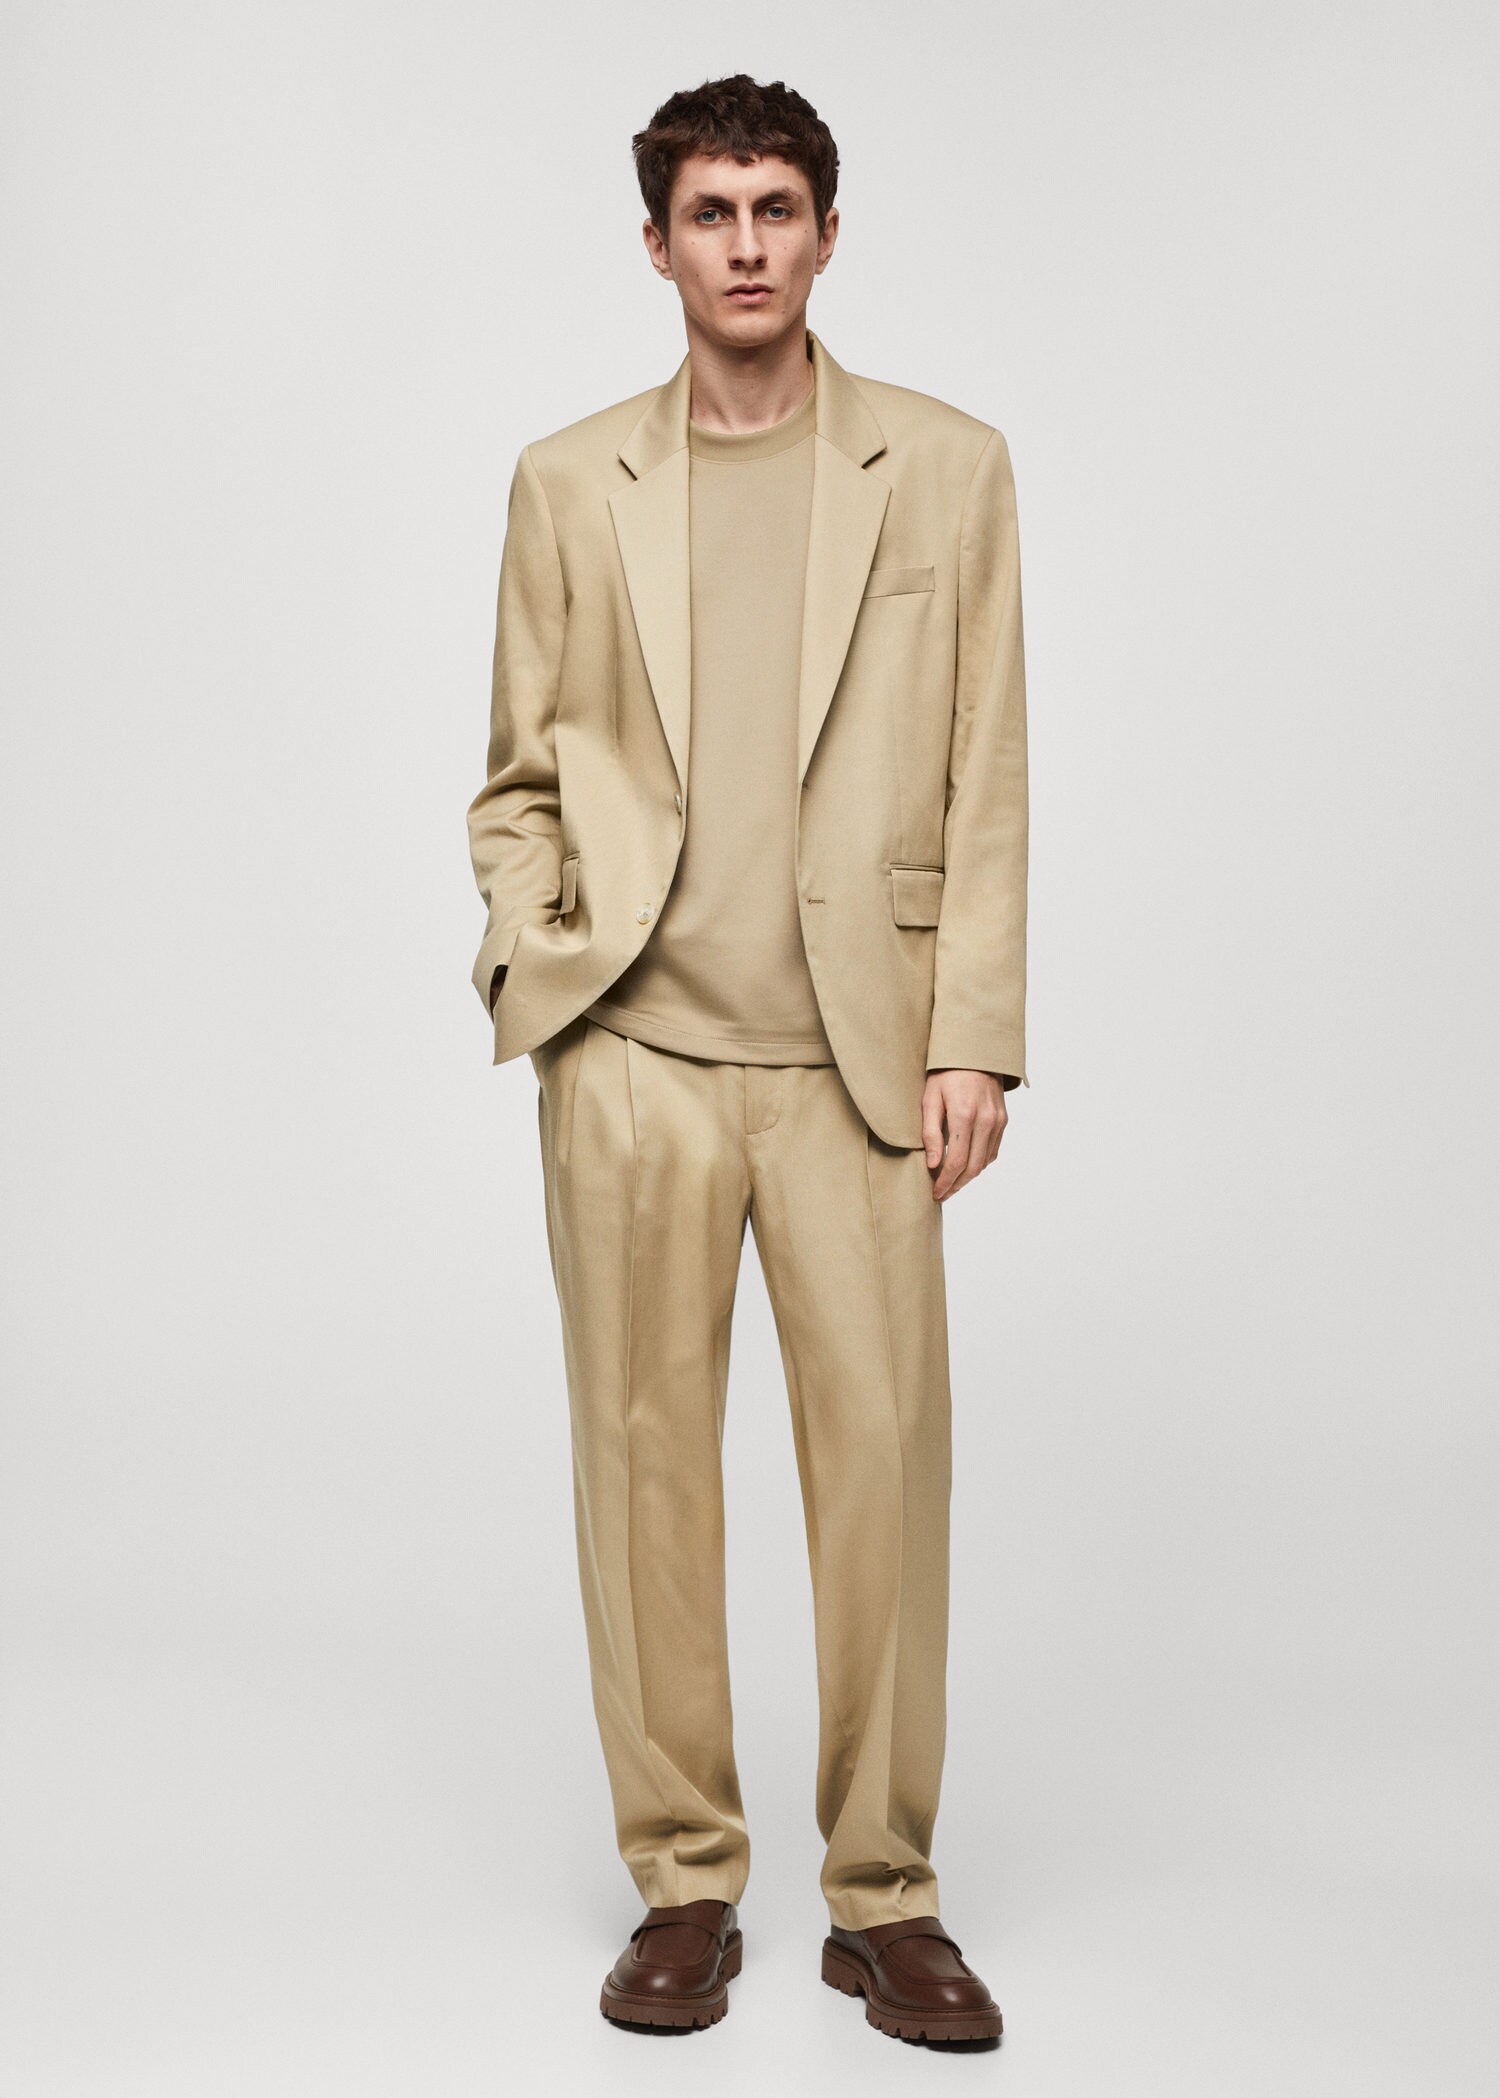 Men's Cotton & Wool Casual Blazer | Blazer outfits men, Dress suits for men,  Designer suits for men